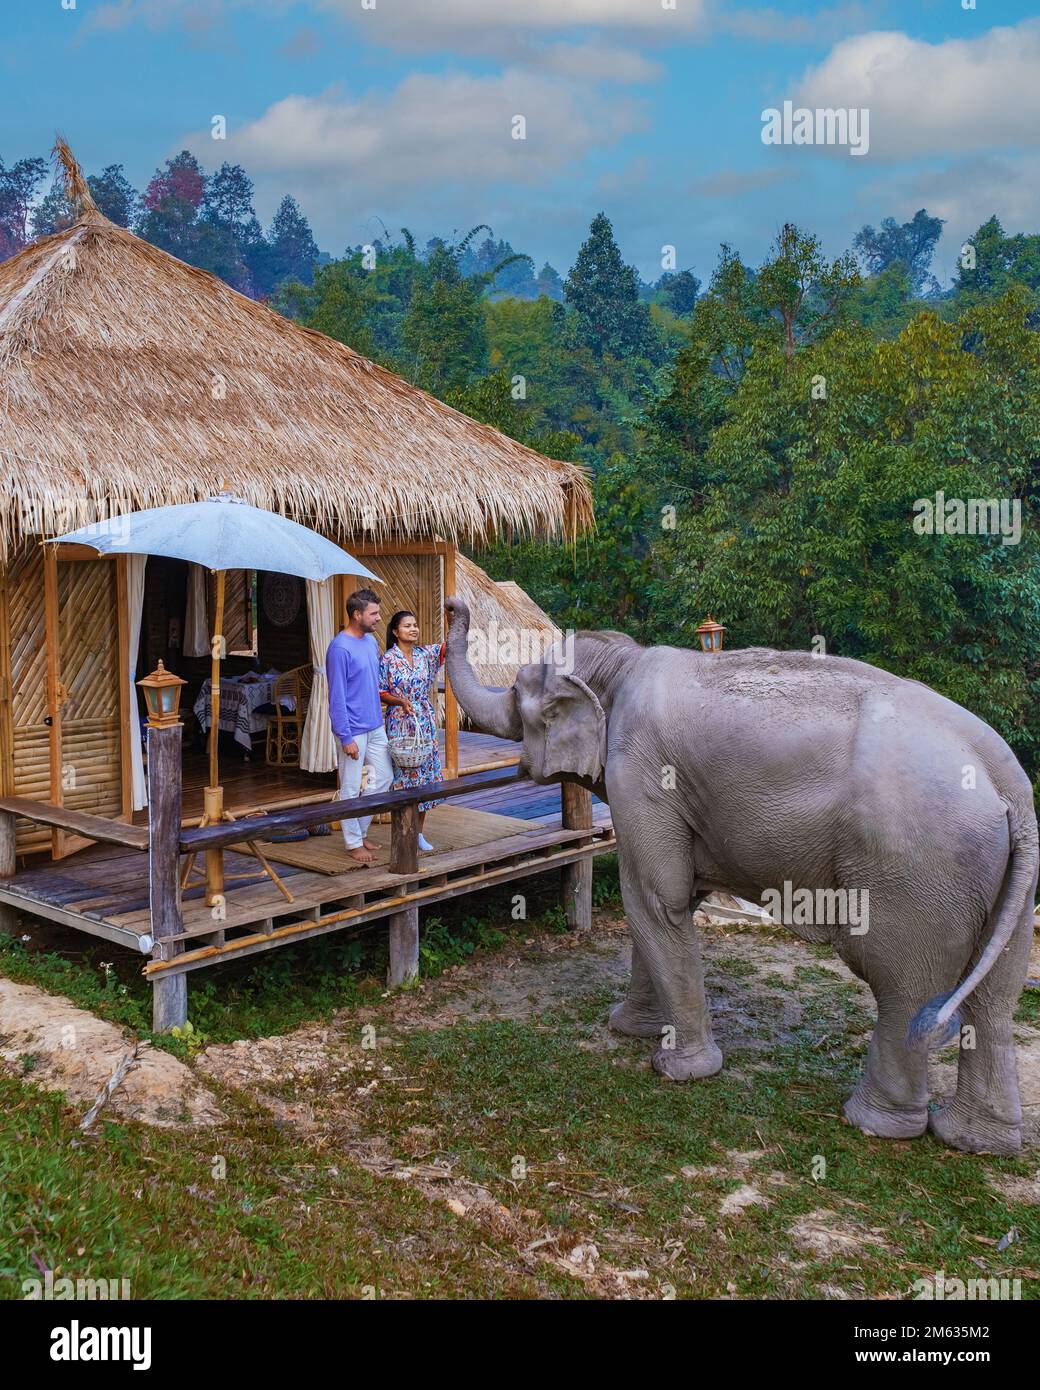 Ein Paar besucht ein Elefantenschutzgebiet zur Elefantenfütterung in Chiang Mai Thailand, einer Elefantenfarm im Bergdschungel von Chiang Mai Thailand. Elephant Sanctuary Chiang Mai Nord-Thailand, Stockfoto